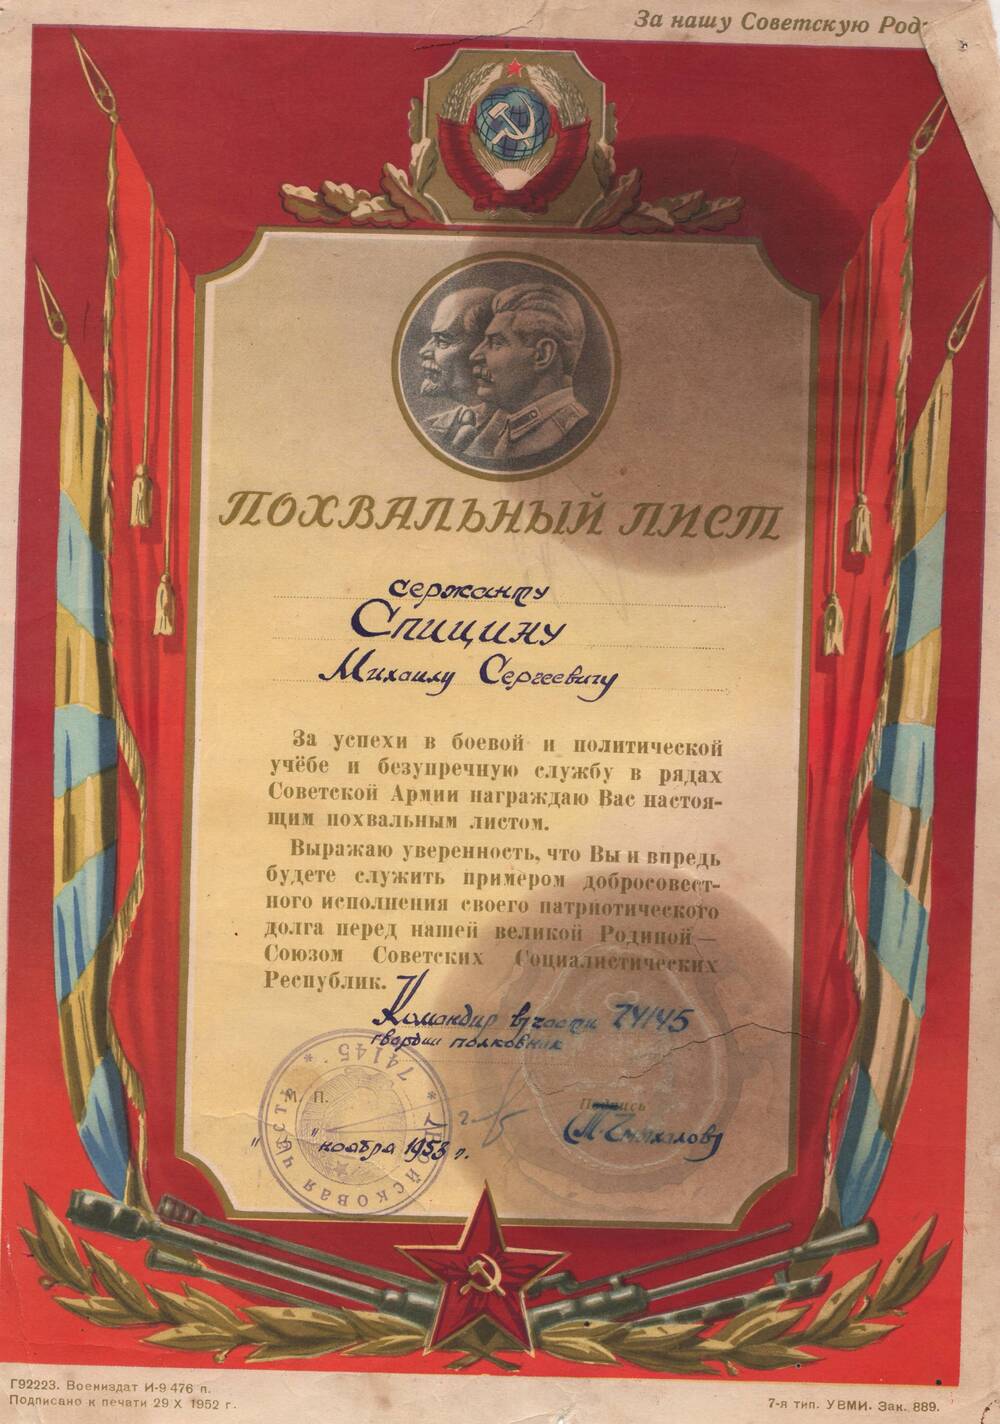 Похвальный лист, врученный сержанту Спицину М.С. за успехи в боевой и политической учёбе и безупречную службу в рядах Советской Армии